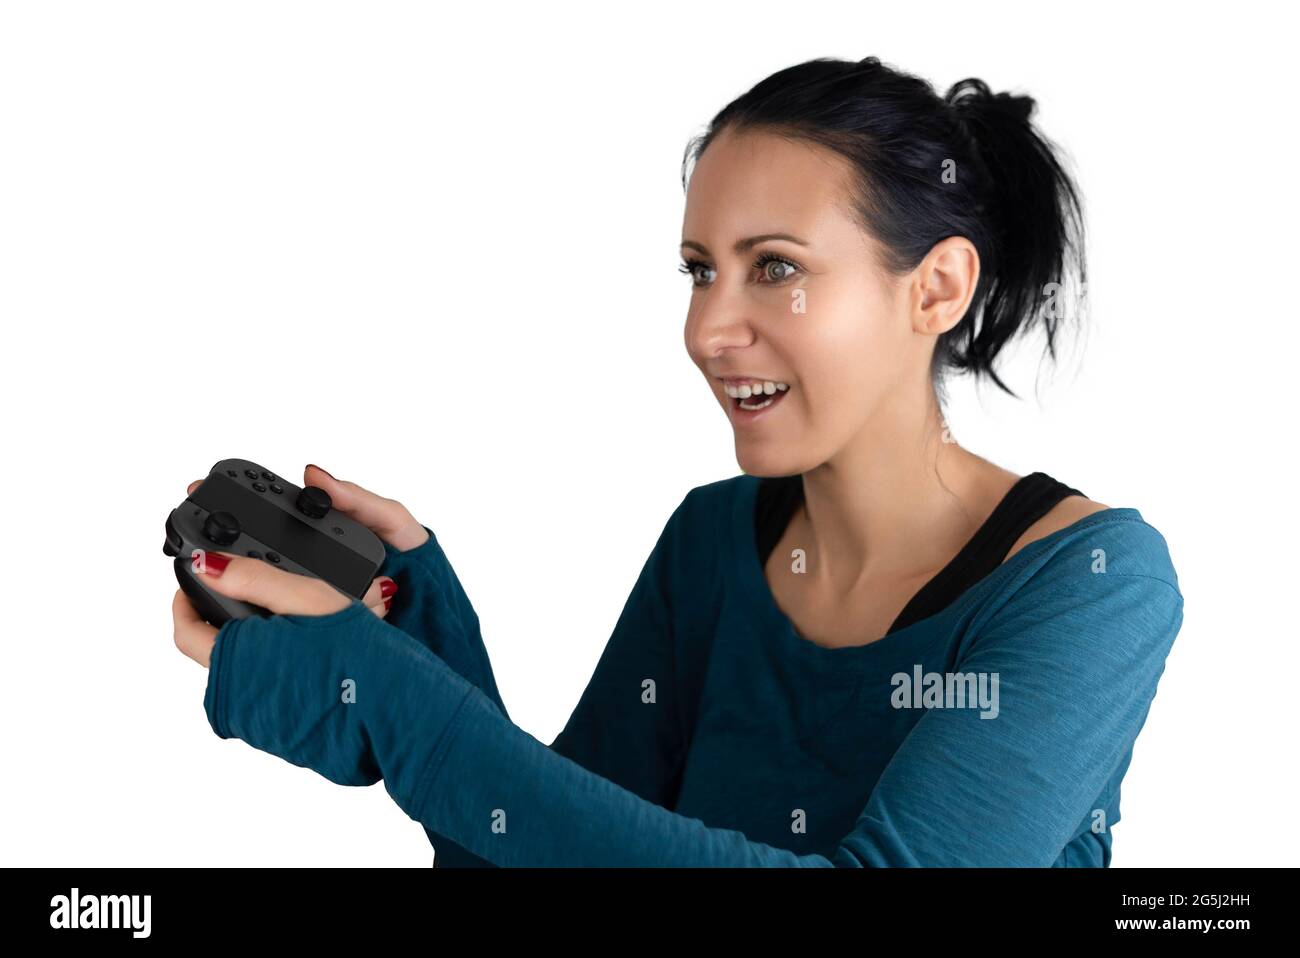 Une jeune femme blanche souriante et concentrée tenant un joypad sans fil excitée se concentrant jouant un jeu vidéo numérique amusant en ligne Banque D'Images